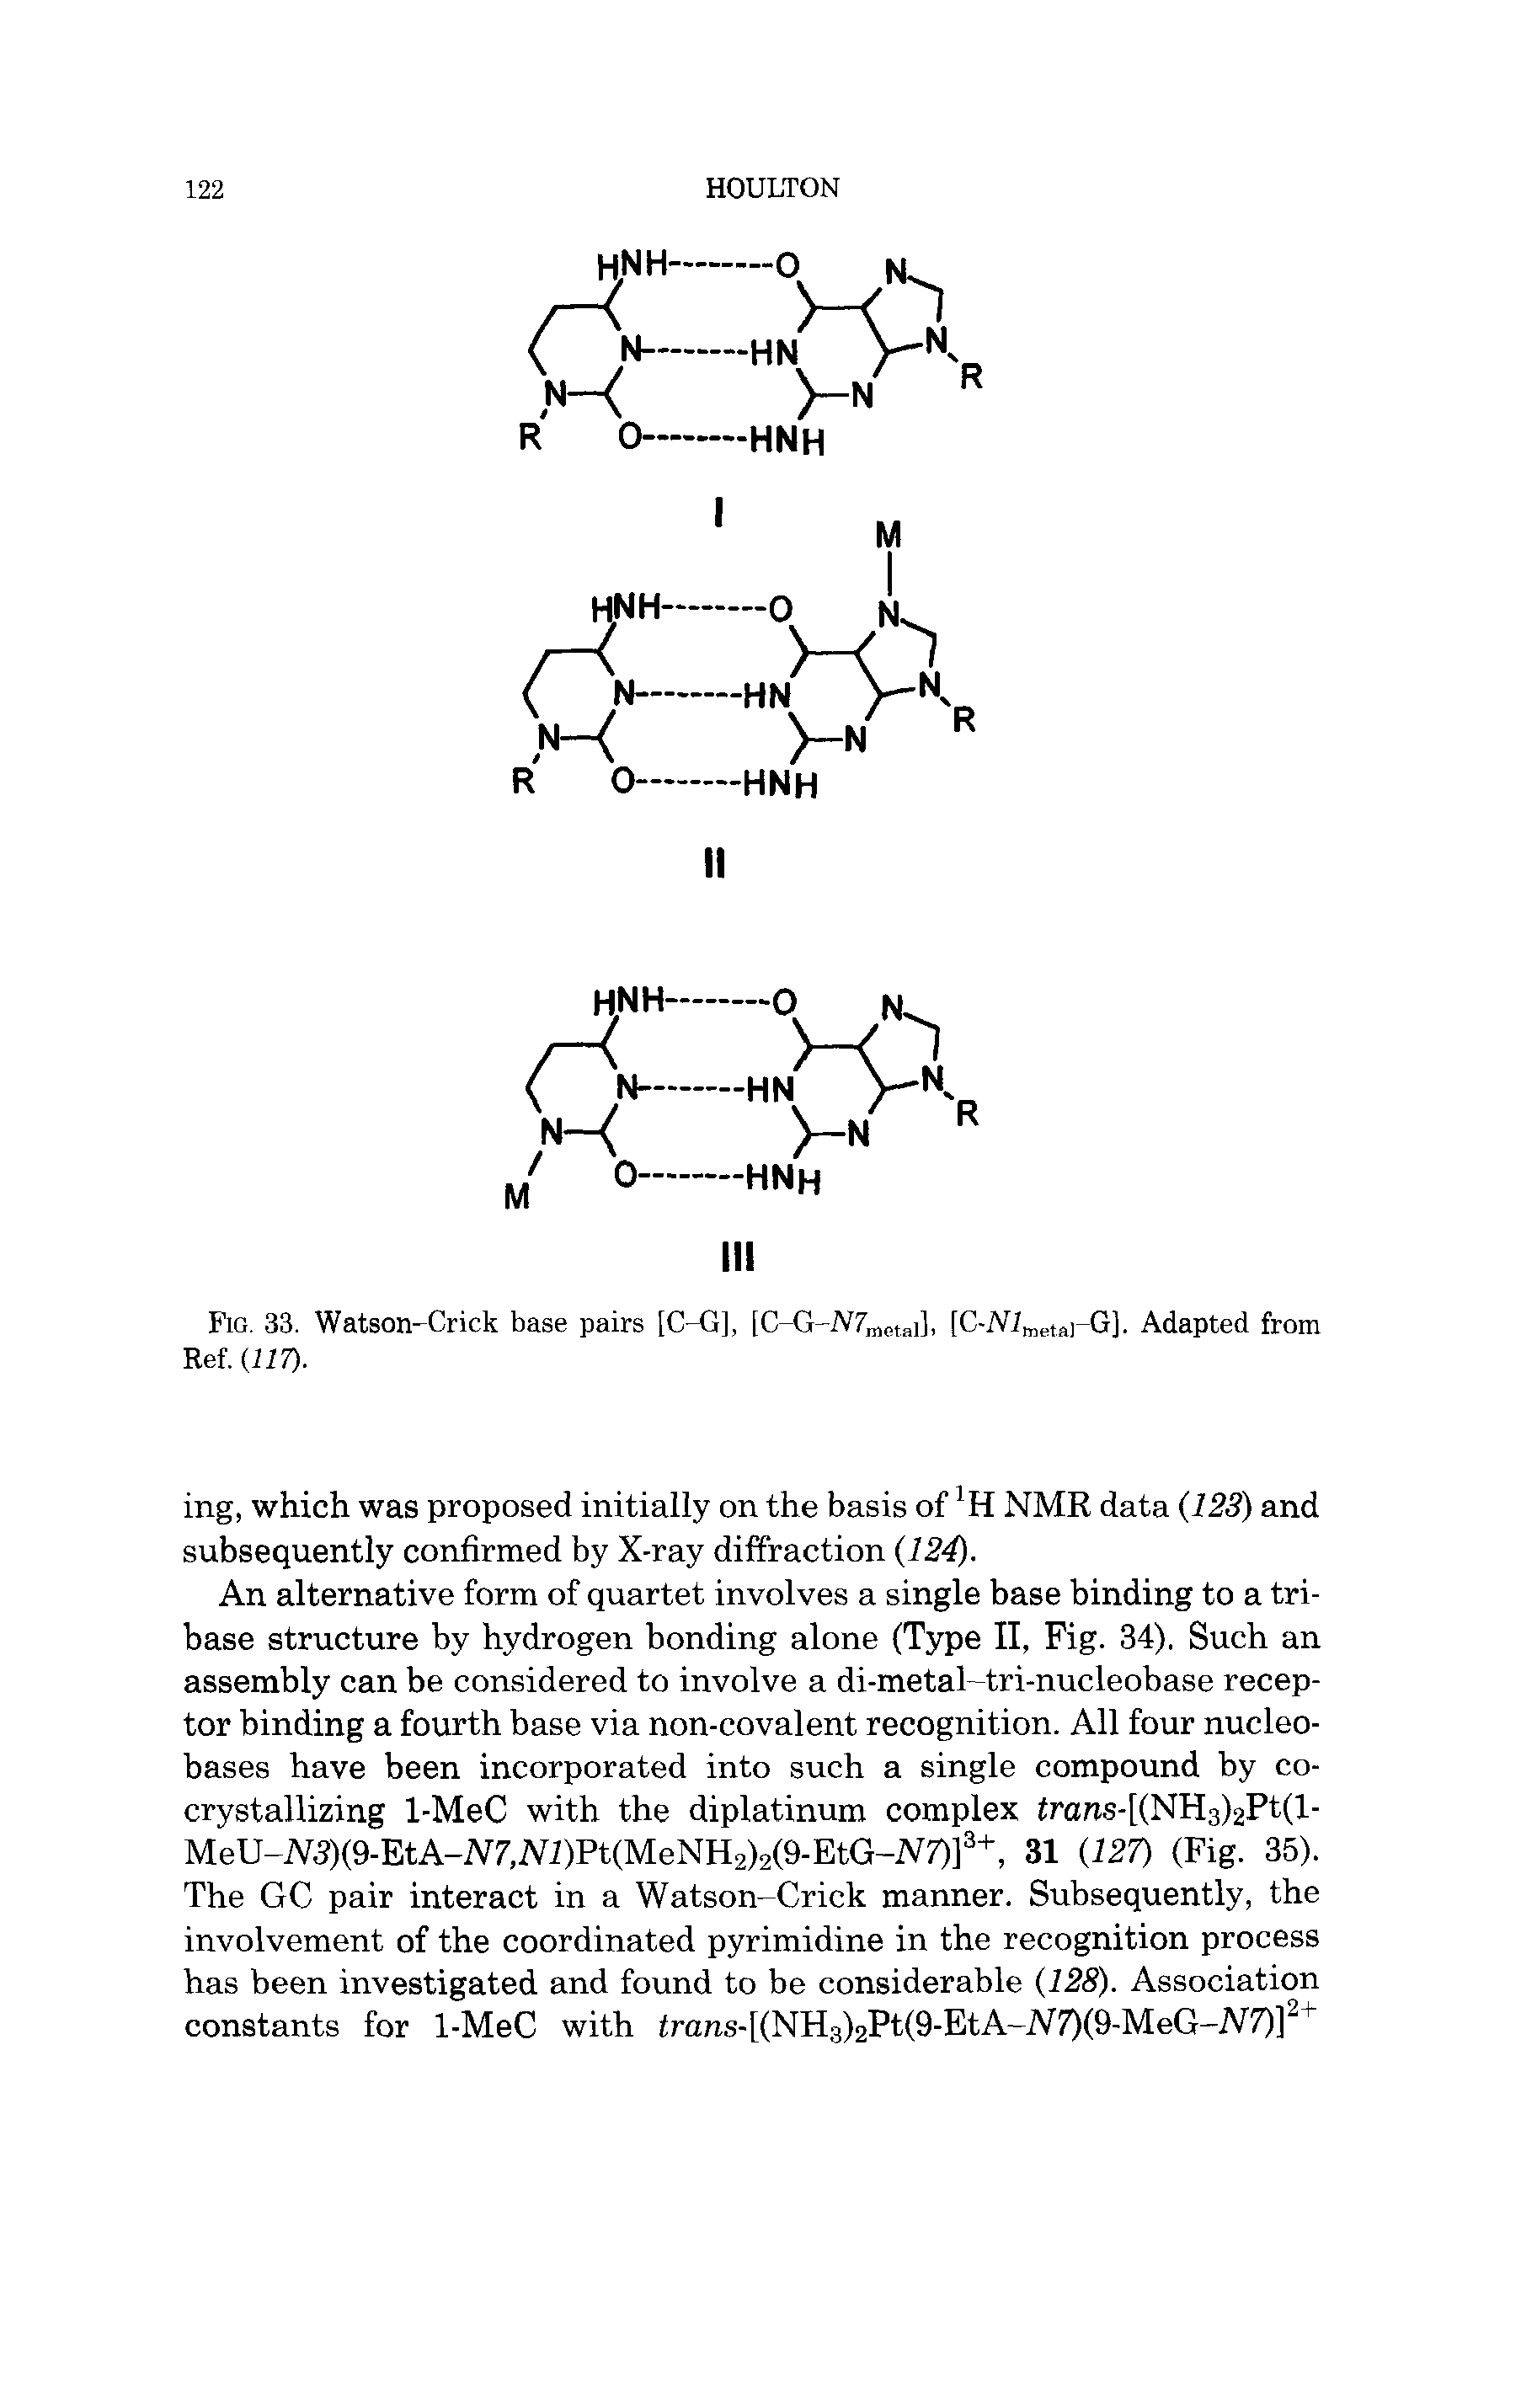 Fig. 33. Watson-Crick base pairs [C-G], [C-G-lVZmetai]. [C-NimetflrG]. Adapted from Ref. (117).